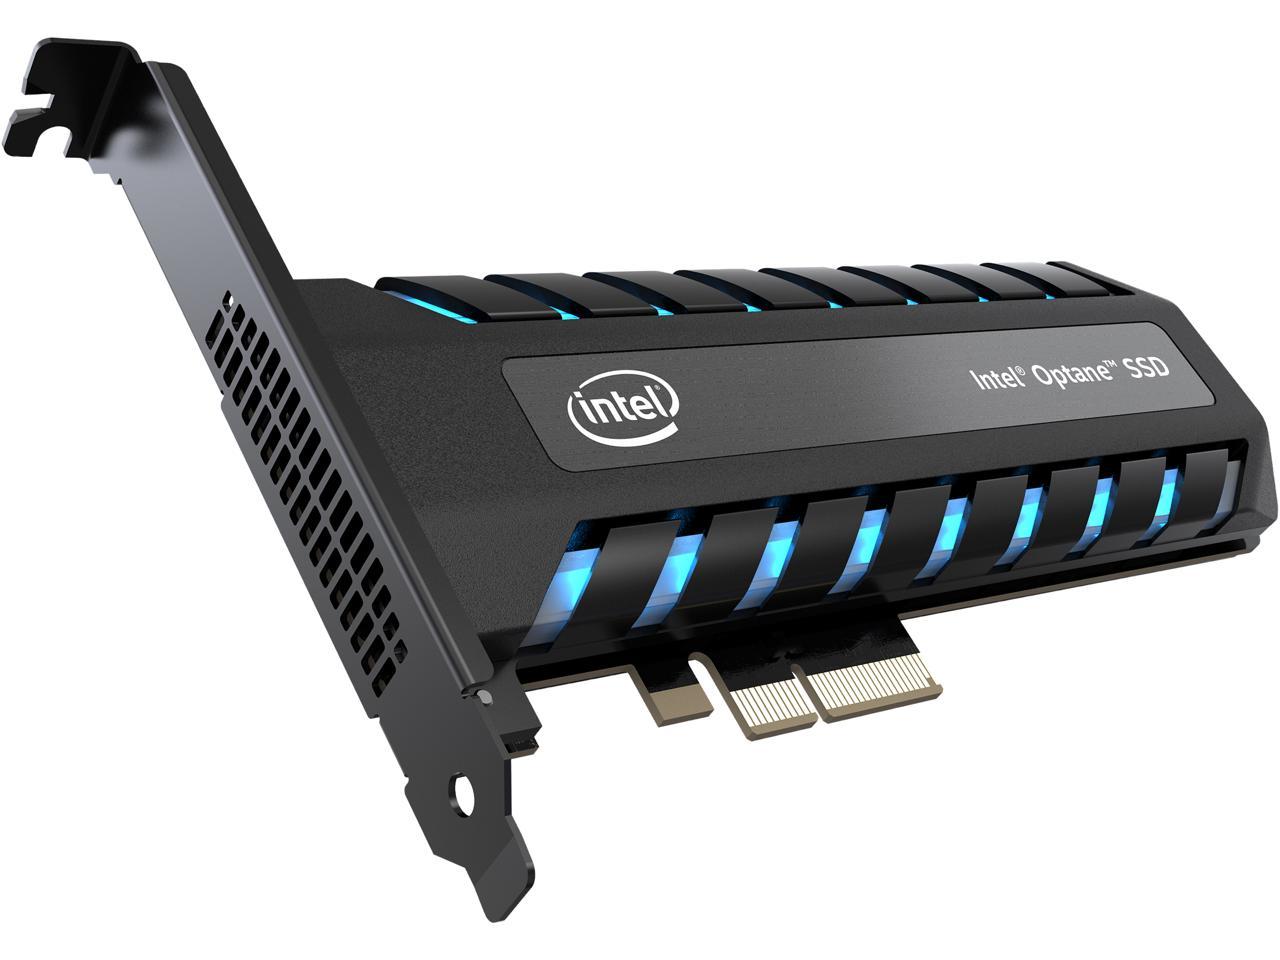 Intel Optane 905P SSD 960GB